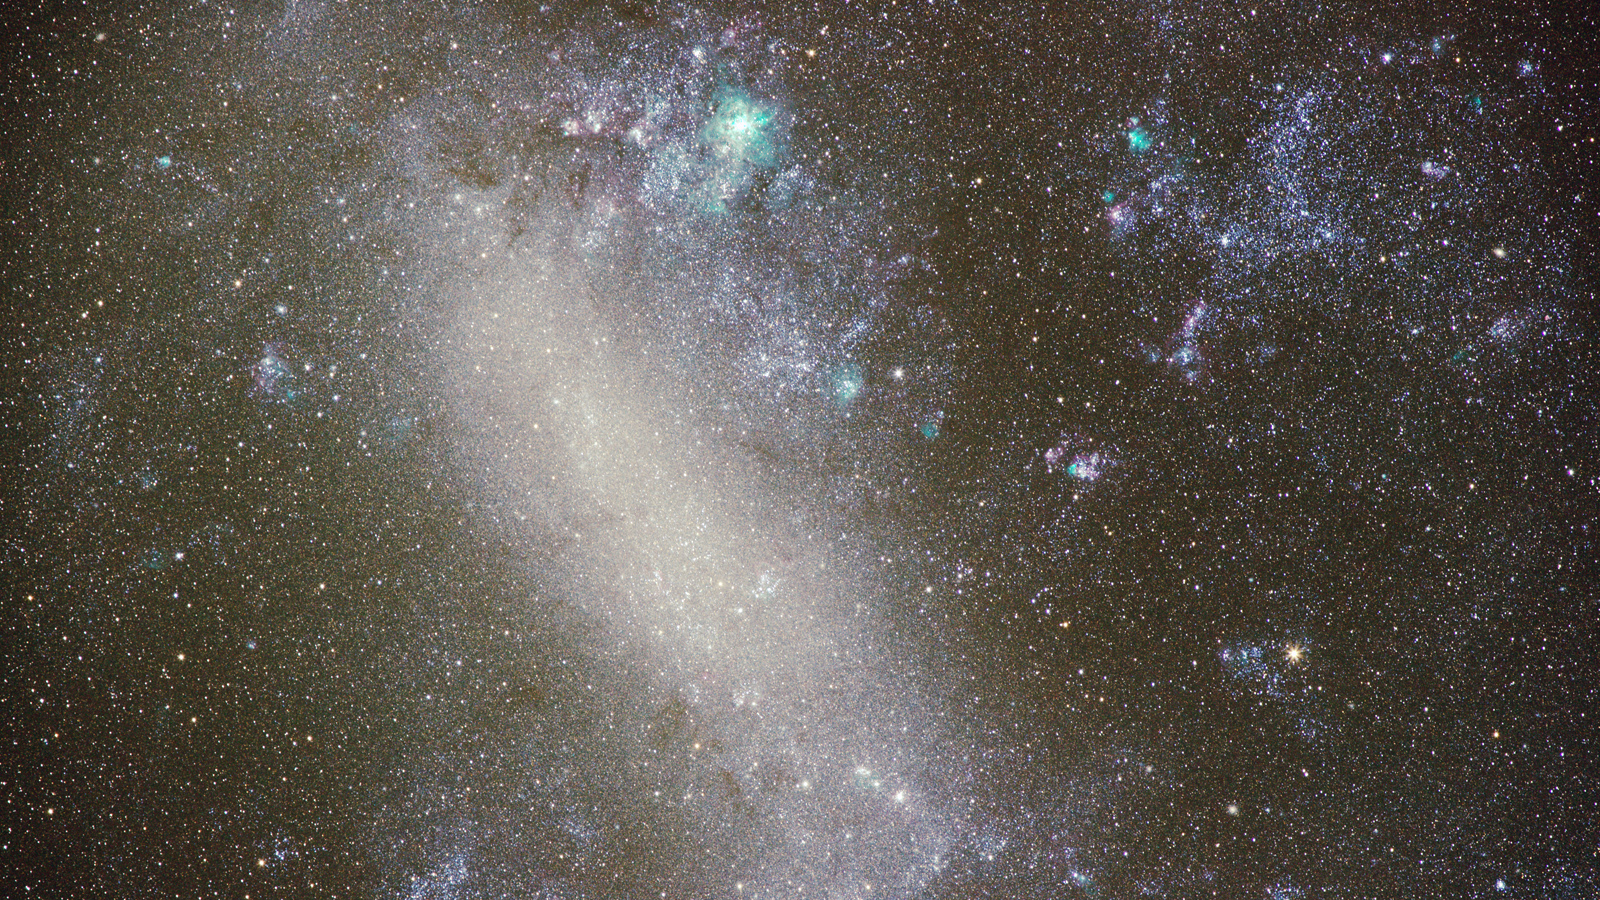  Die Große Magellansche Wolke, aufgenommen mit 200mm